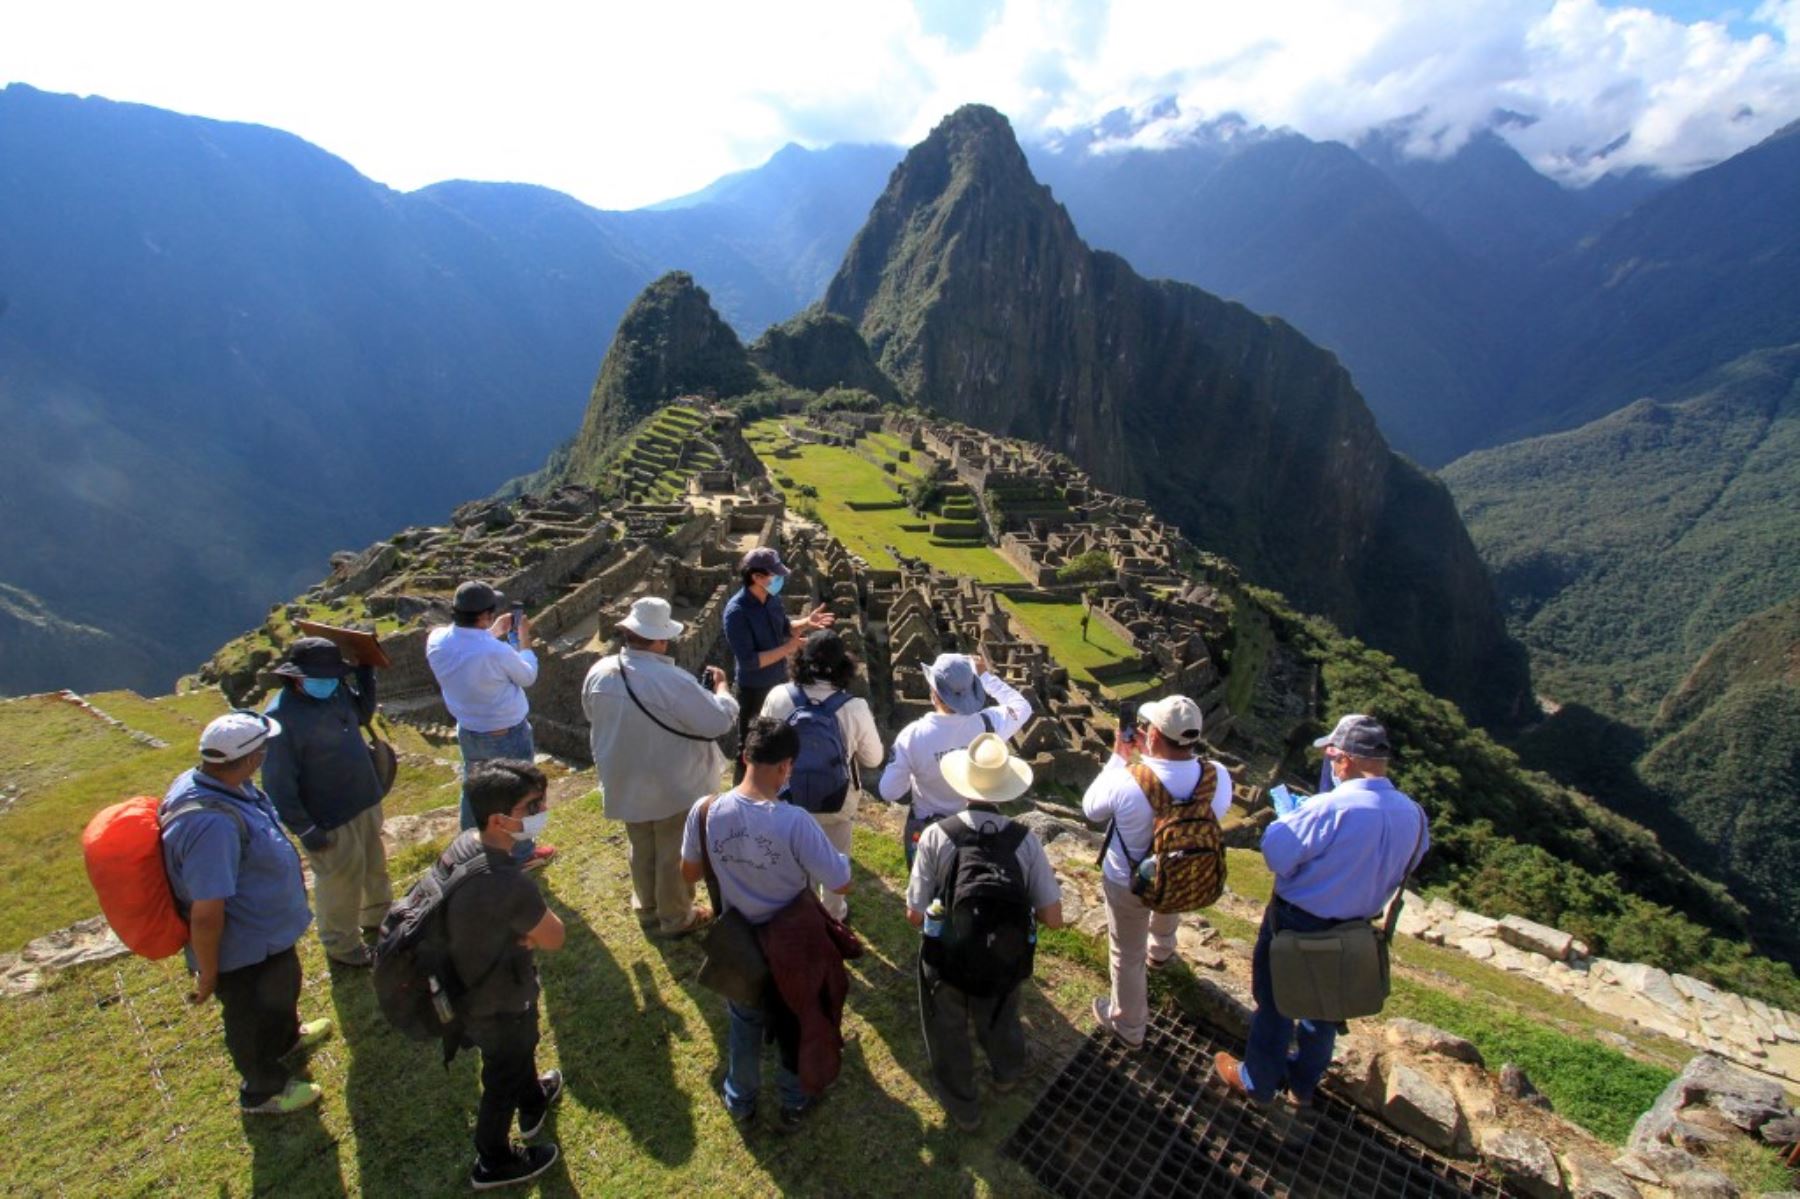 La ciudadela inca Machu Picchu, el principal atractivo turístico del Perú, Patrimonio Mundial y una de las siete nuevas maravillas del planeta, fue el primer destino nacional en recibir el sello Safe Travels, el 13 de octubre de 2020. Este reconocimiento internacional marcó el inicio de la reactivación turística en el país. AFP